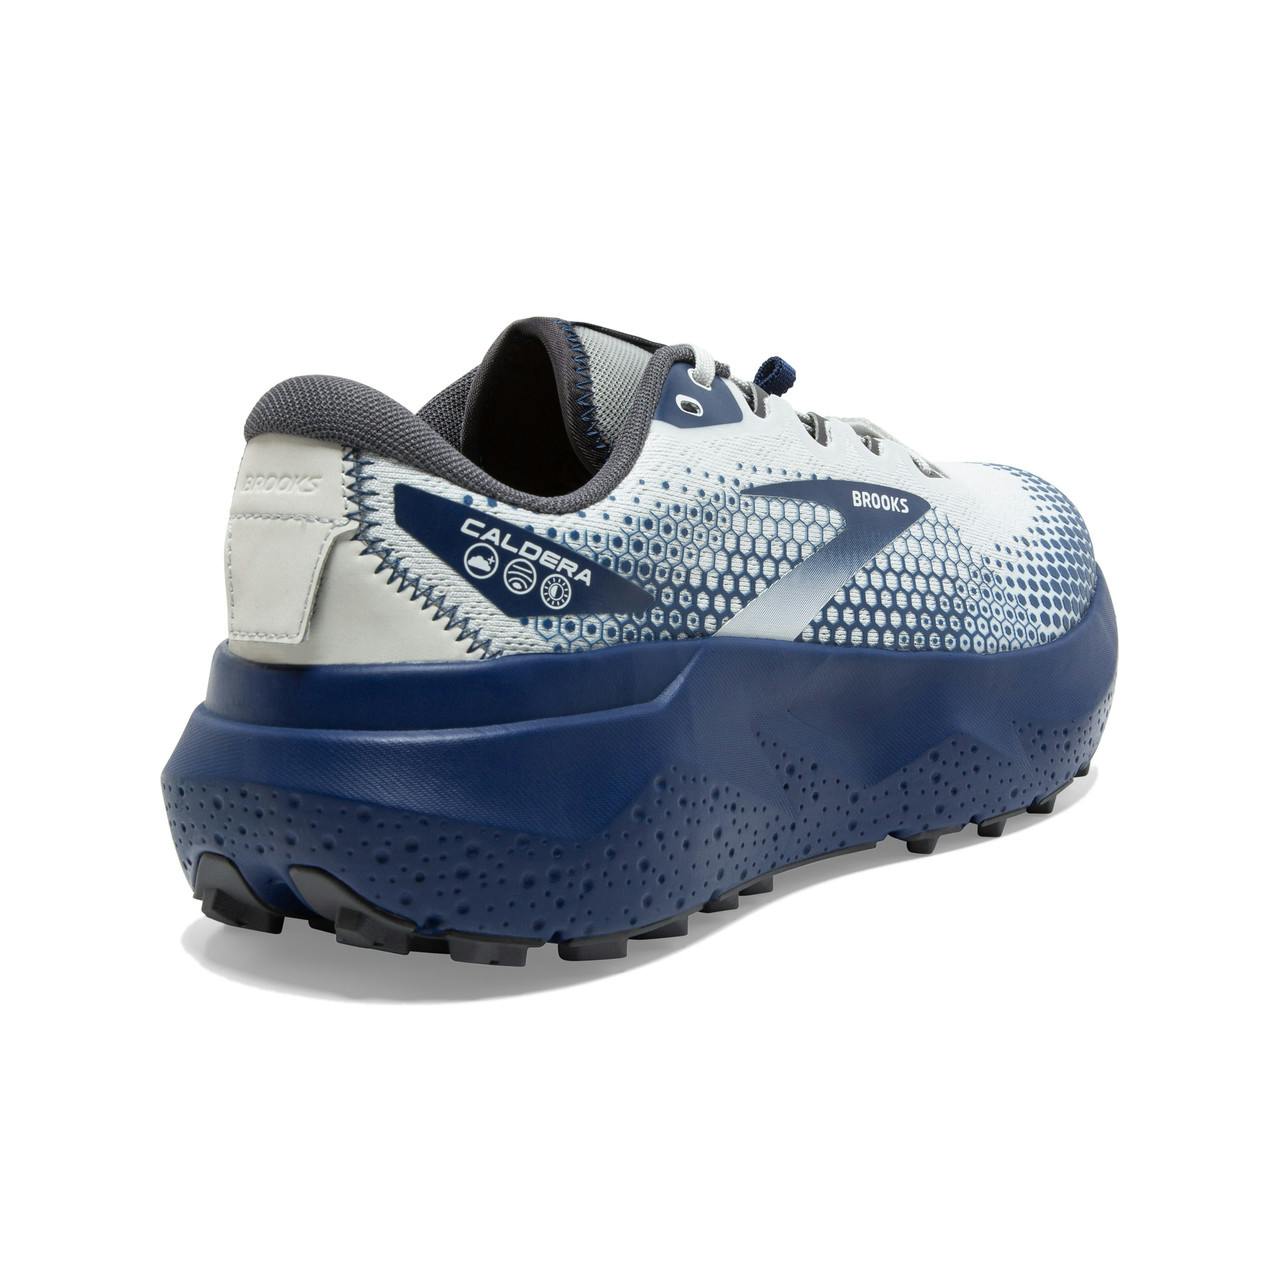 Chaussures de course sur sentier Caldera 6 Huître/Bleu Profondeurs/